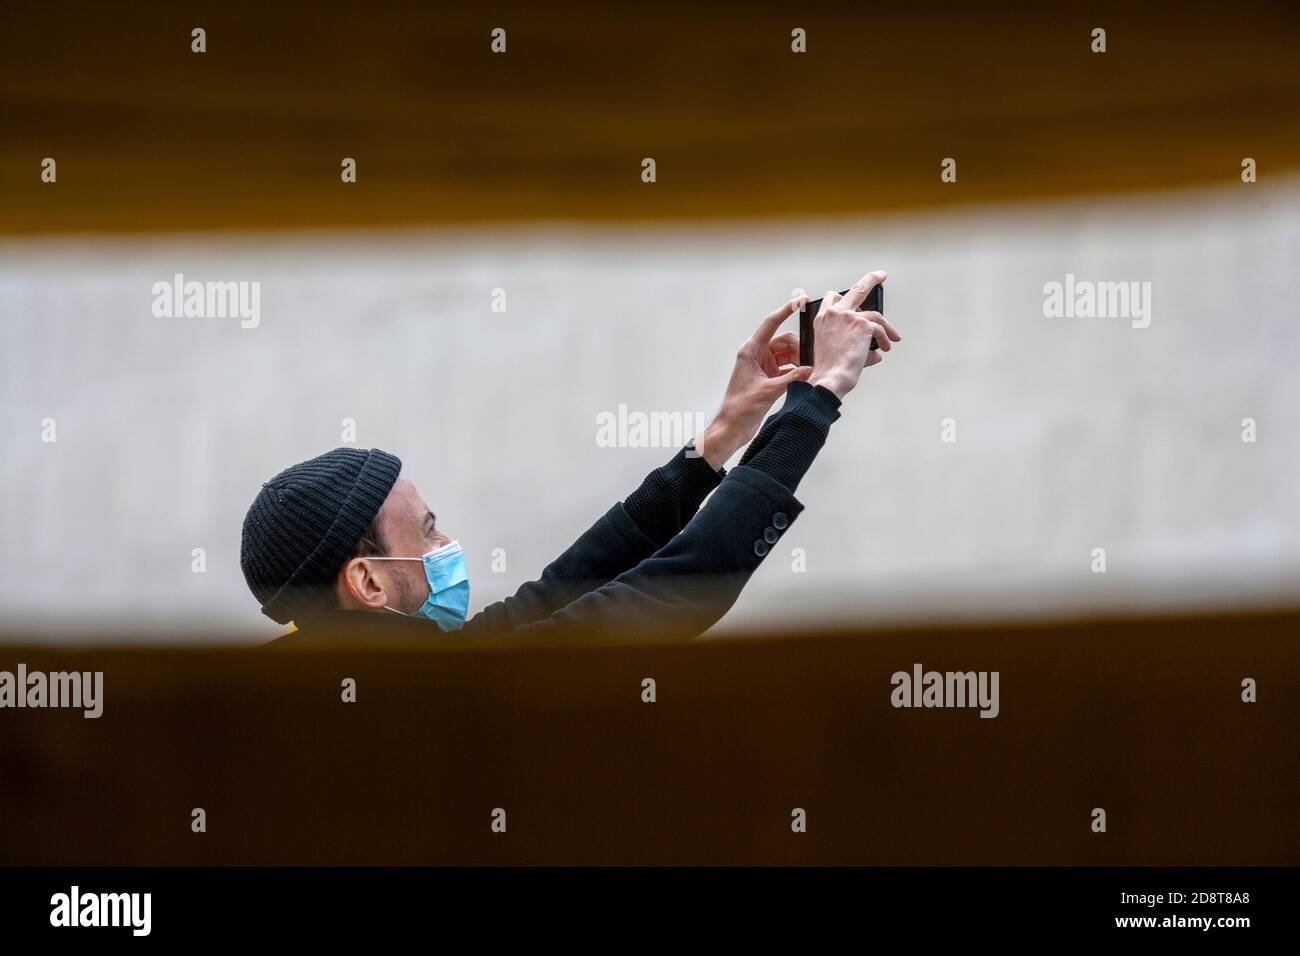 Homme, portant un bonnet beanie et un masque facial, utilisant son téléphone mobile pour faire une vidéo numérique. Southbank de Londres, Royaume-Uni Banque D'Images